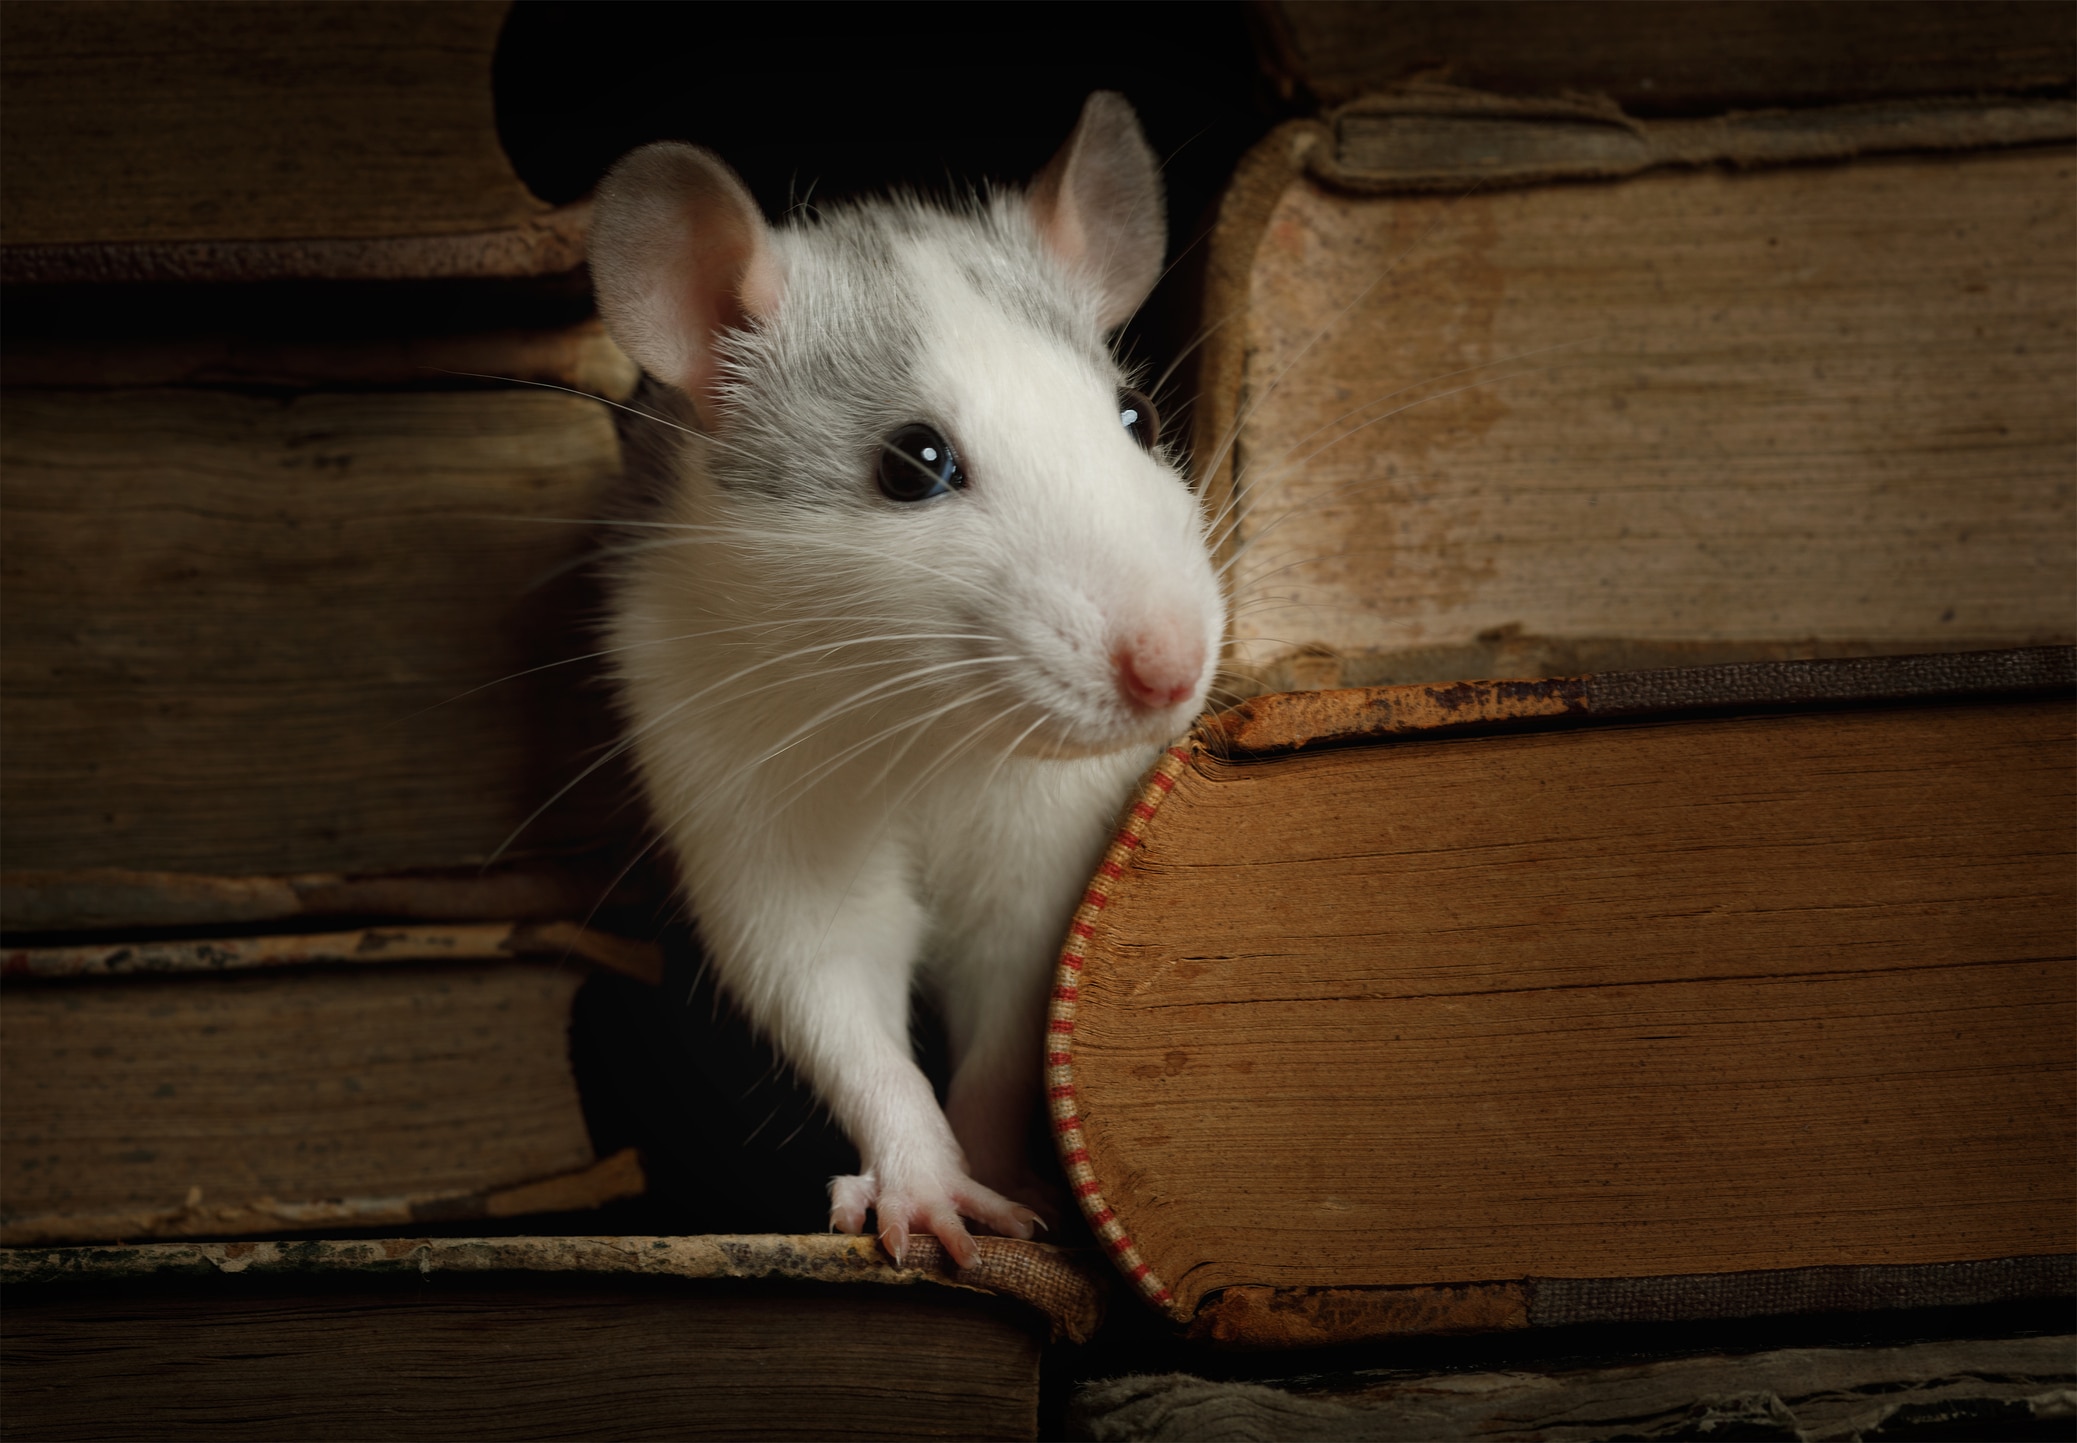 Rat hiding between books